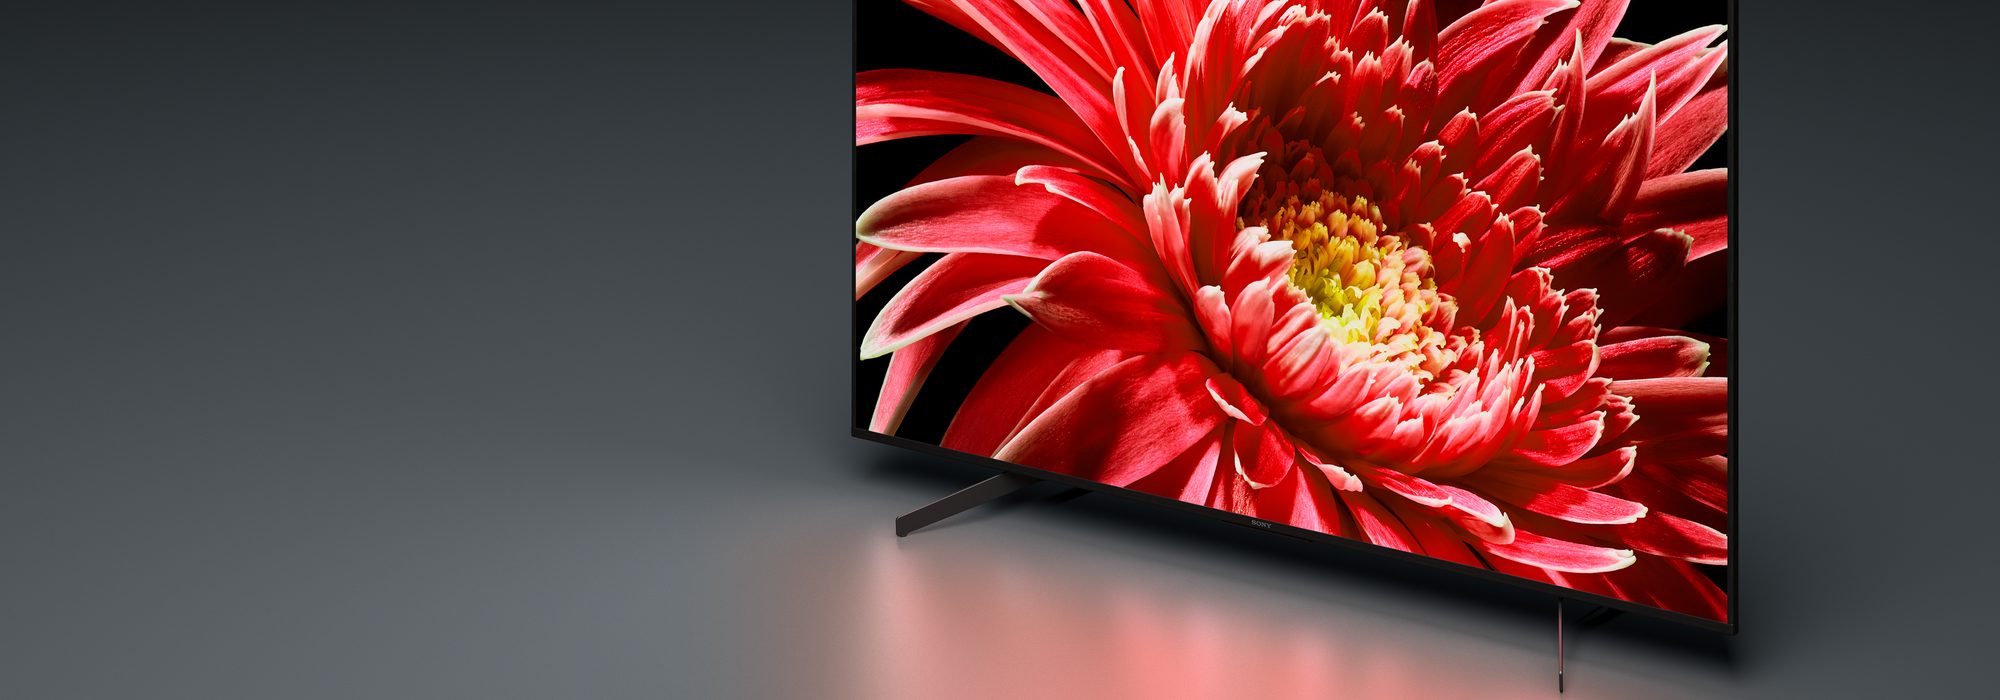 طراحی زیبای تلویزیون 85 اینچ سونی مدل 85X8500G